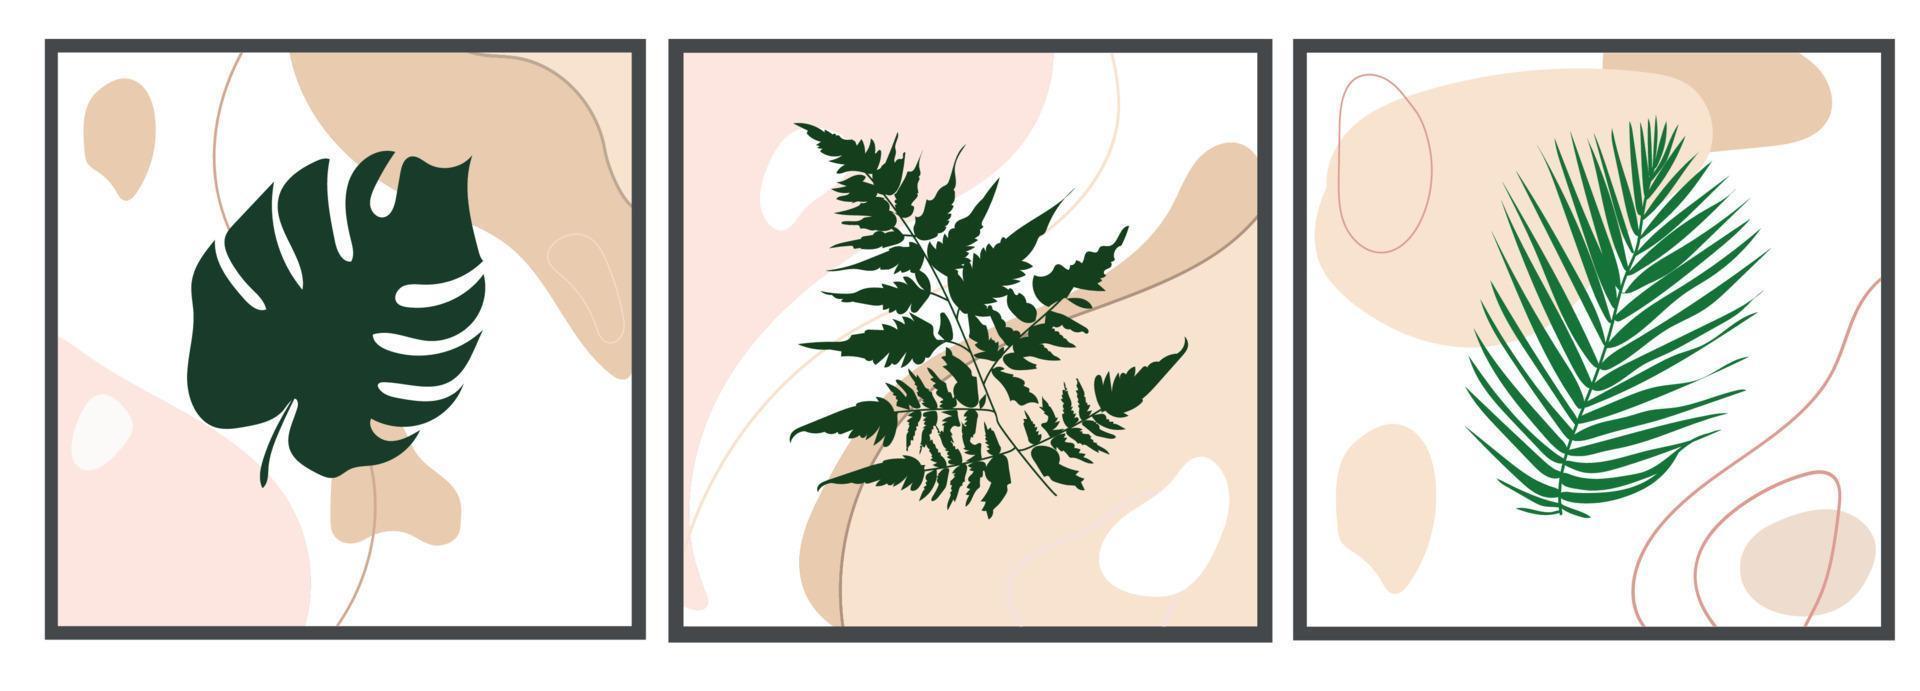 ensemble de vecteurs d'art mural botanique. différentes silhouettes dessinées de feuilles tropicales sur fond abstrait. conception abstraite de plantes pour l'impression, la couverture, le papier peint, les images murales minimalistes et naturelles. vecteur